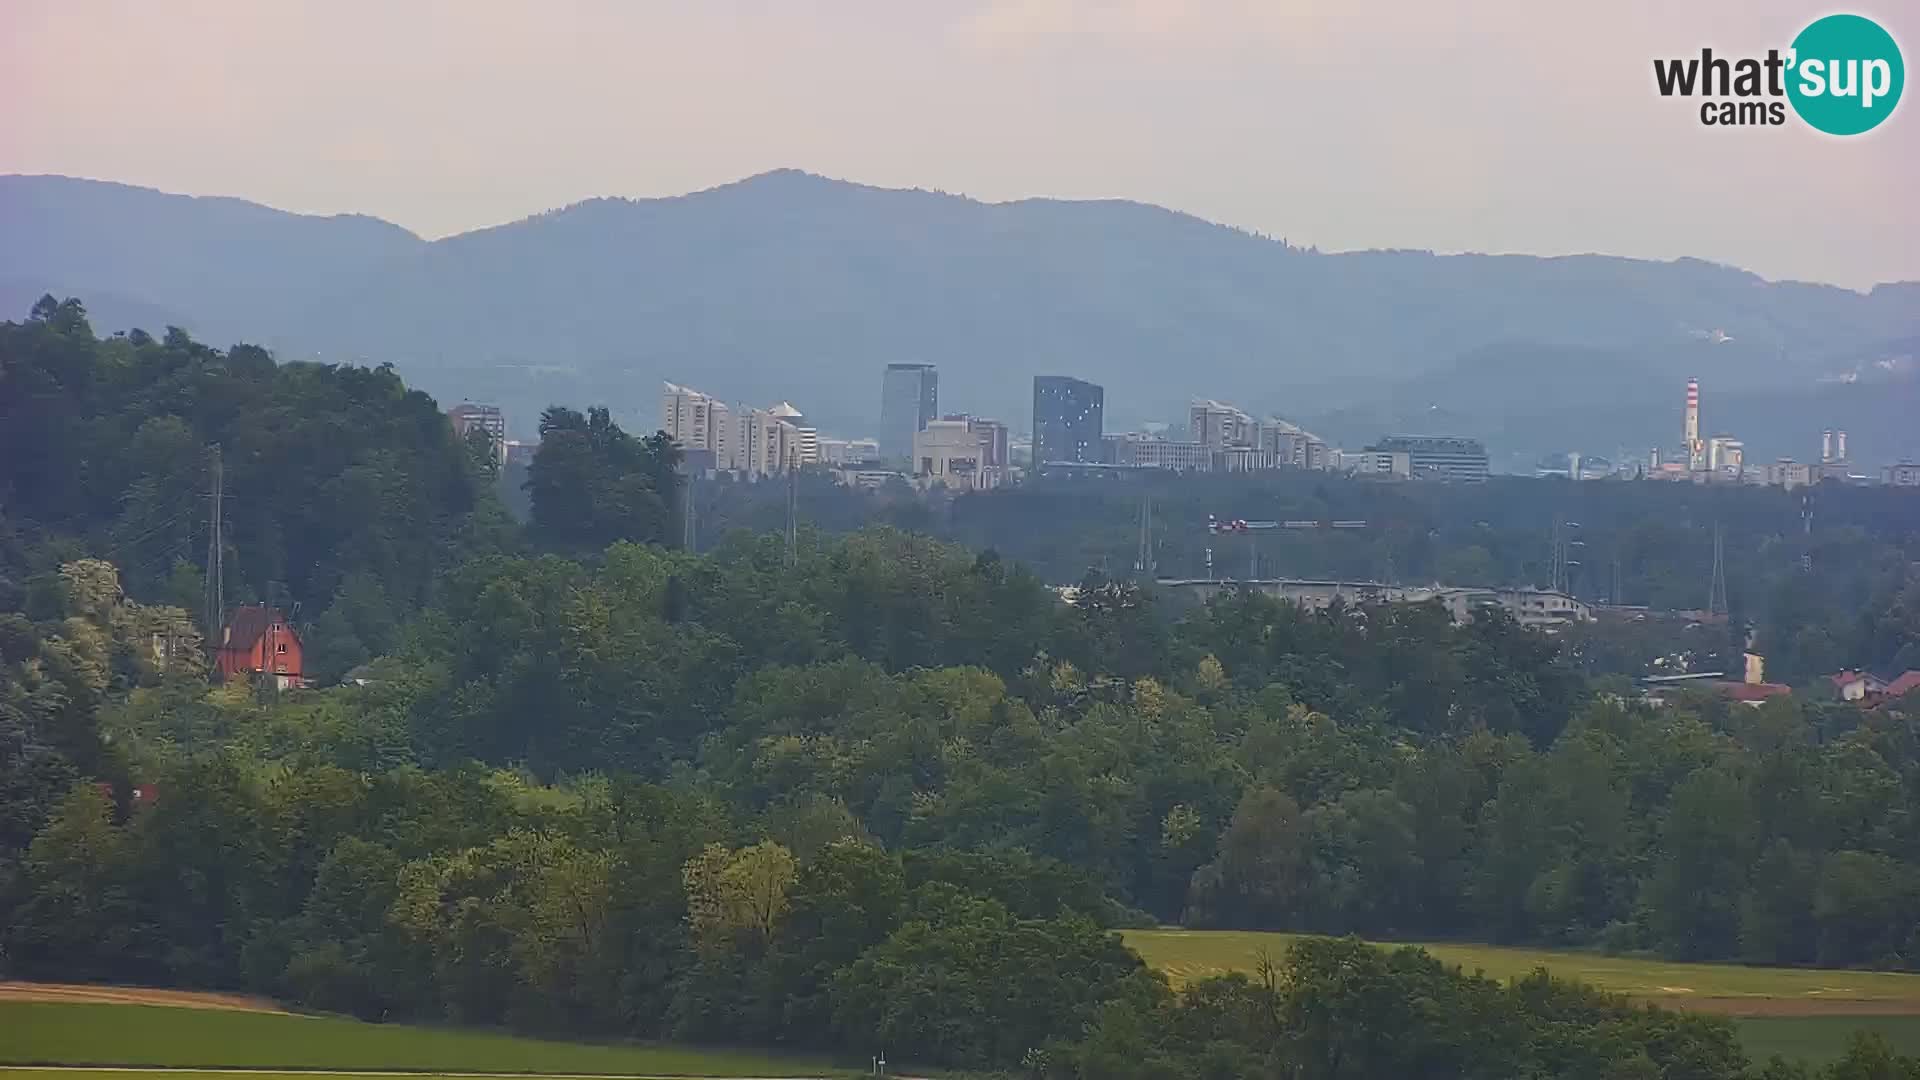 Panorama von Medvode